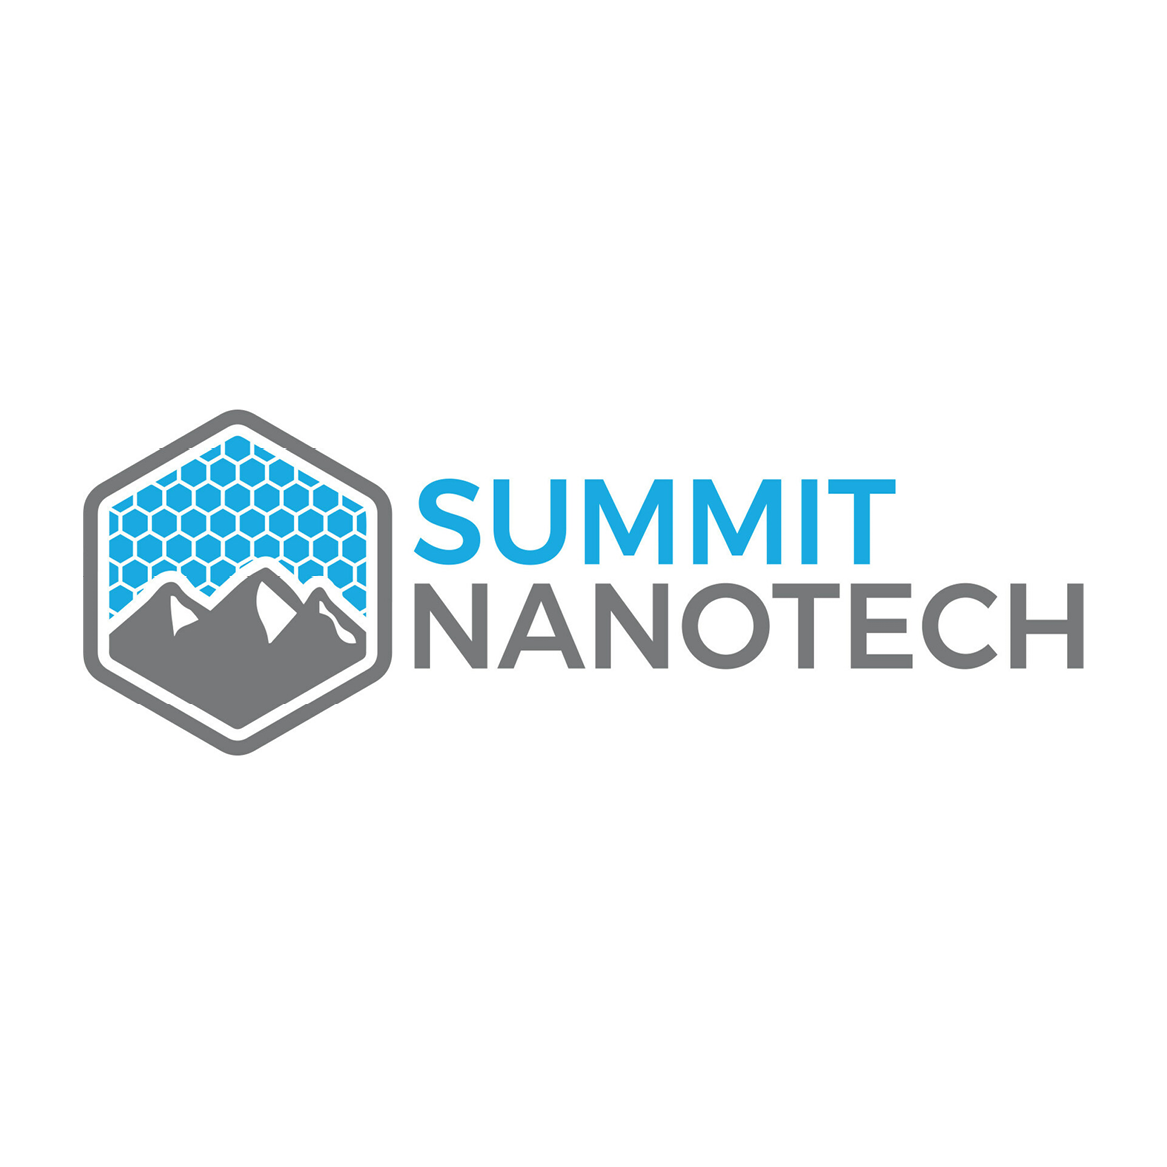 Summit Nanotech